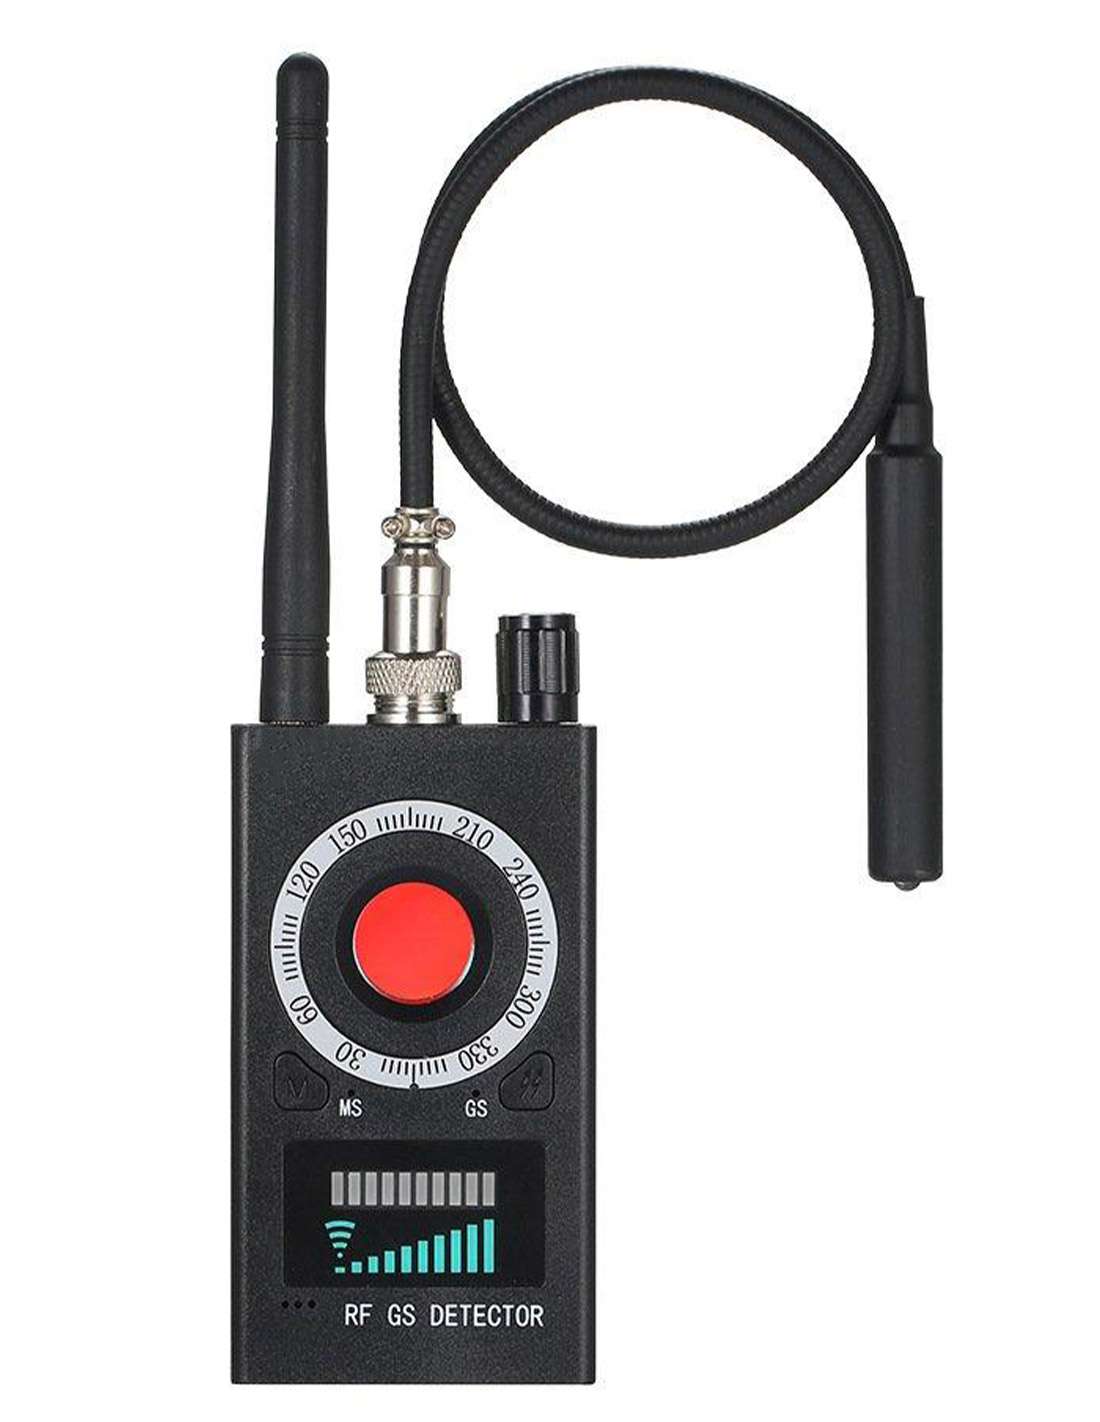 Détecteur caméra espion et traceur GPS : fréquences et ondes